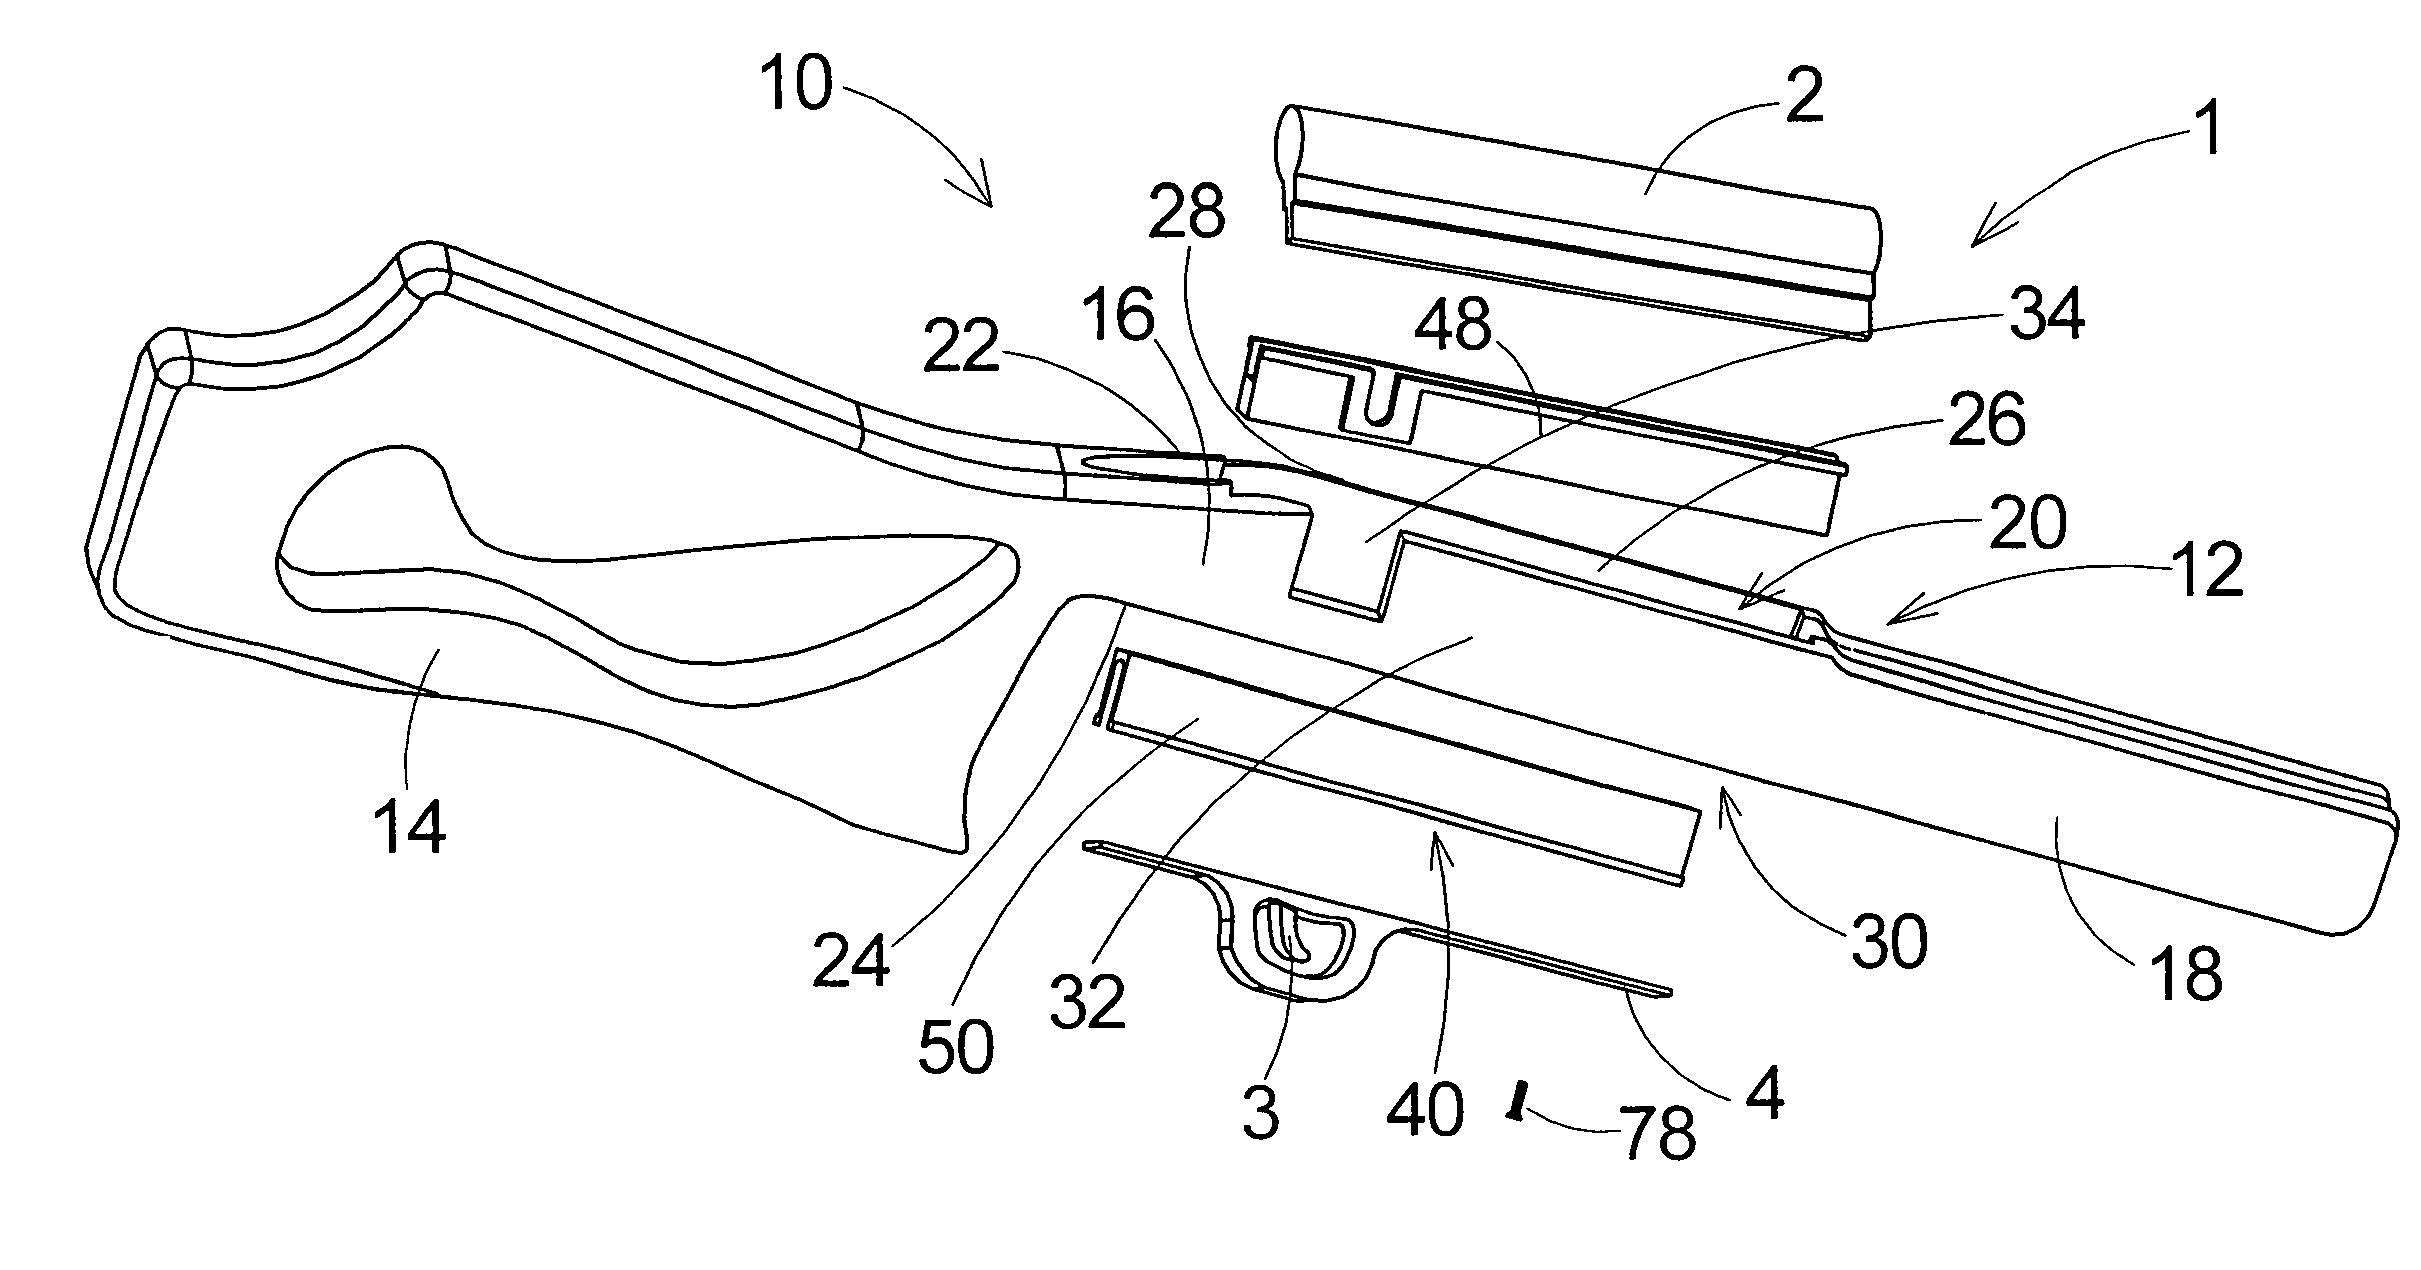 Gunstock with modular insert